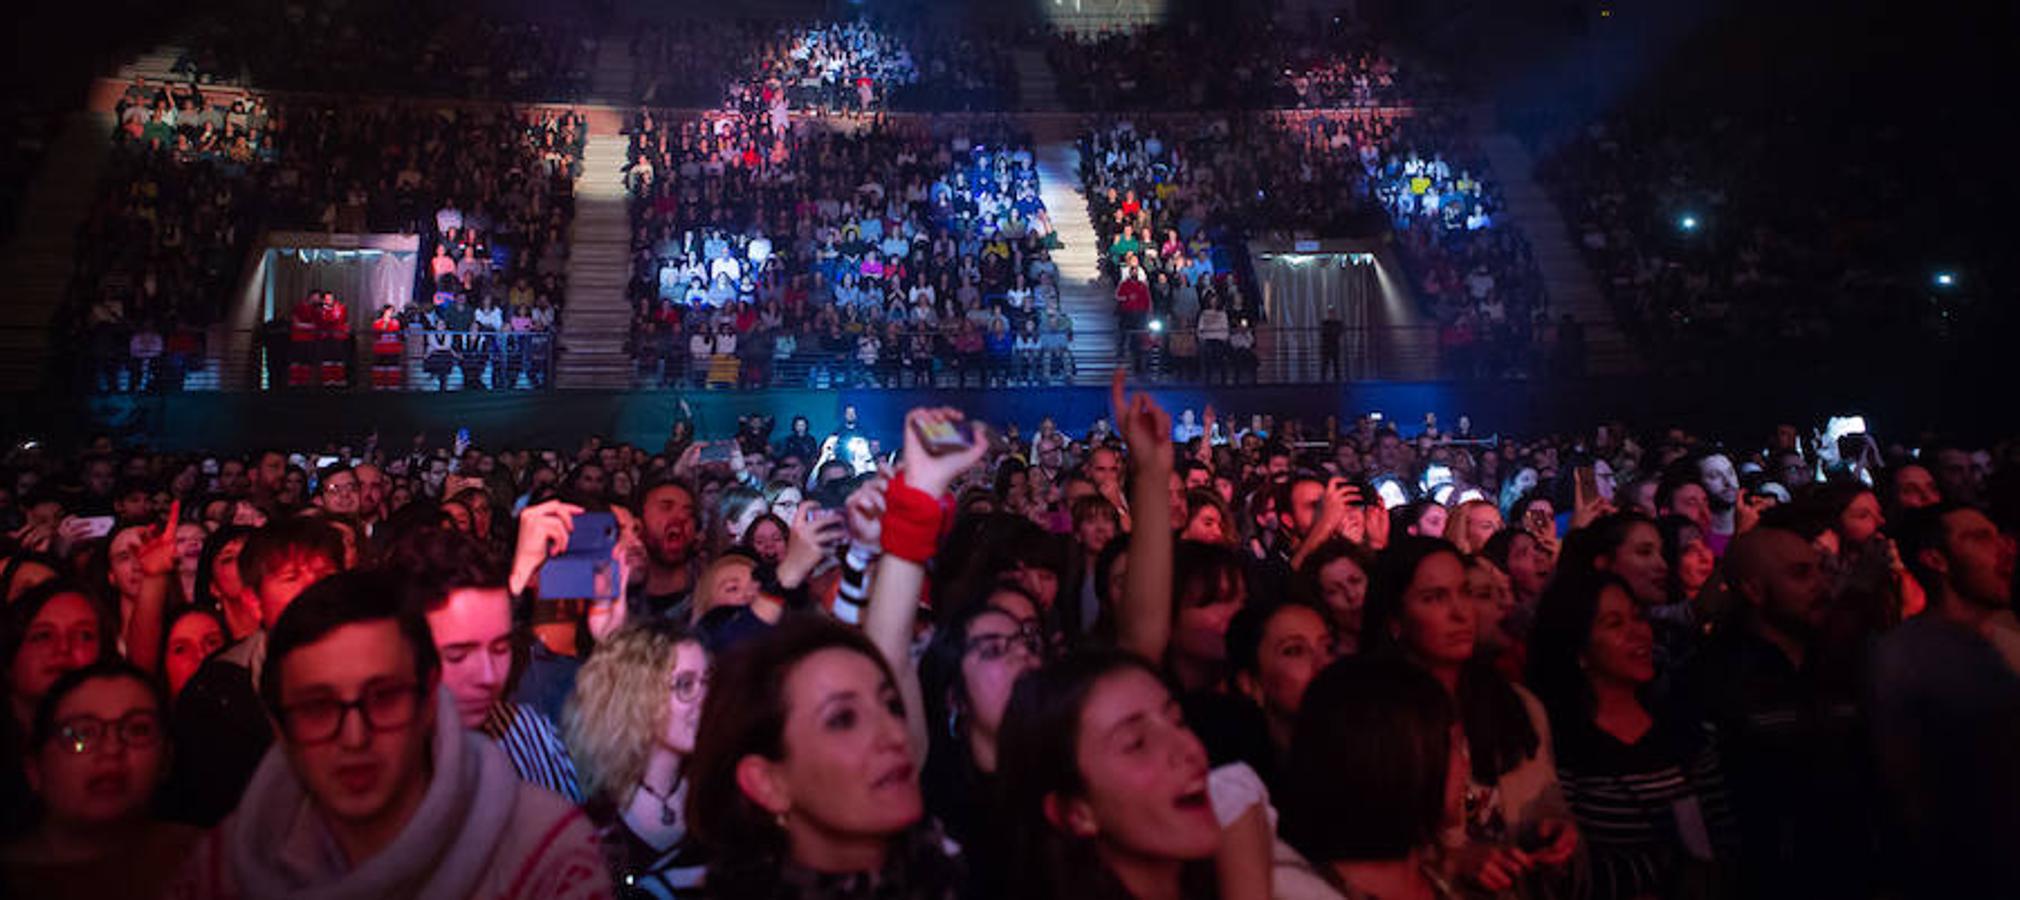 El músico y cantante Pablo López hizo de las delicias de sus fans en el concierto celebrado anoche en el Palacio de los Deportes de Logroño.